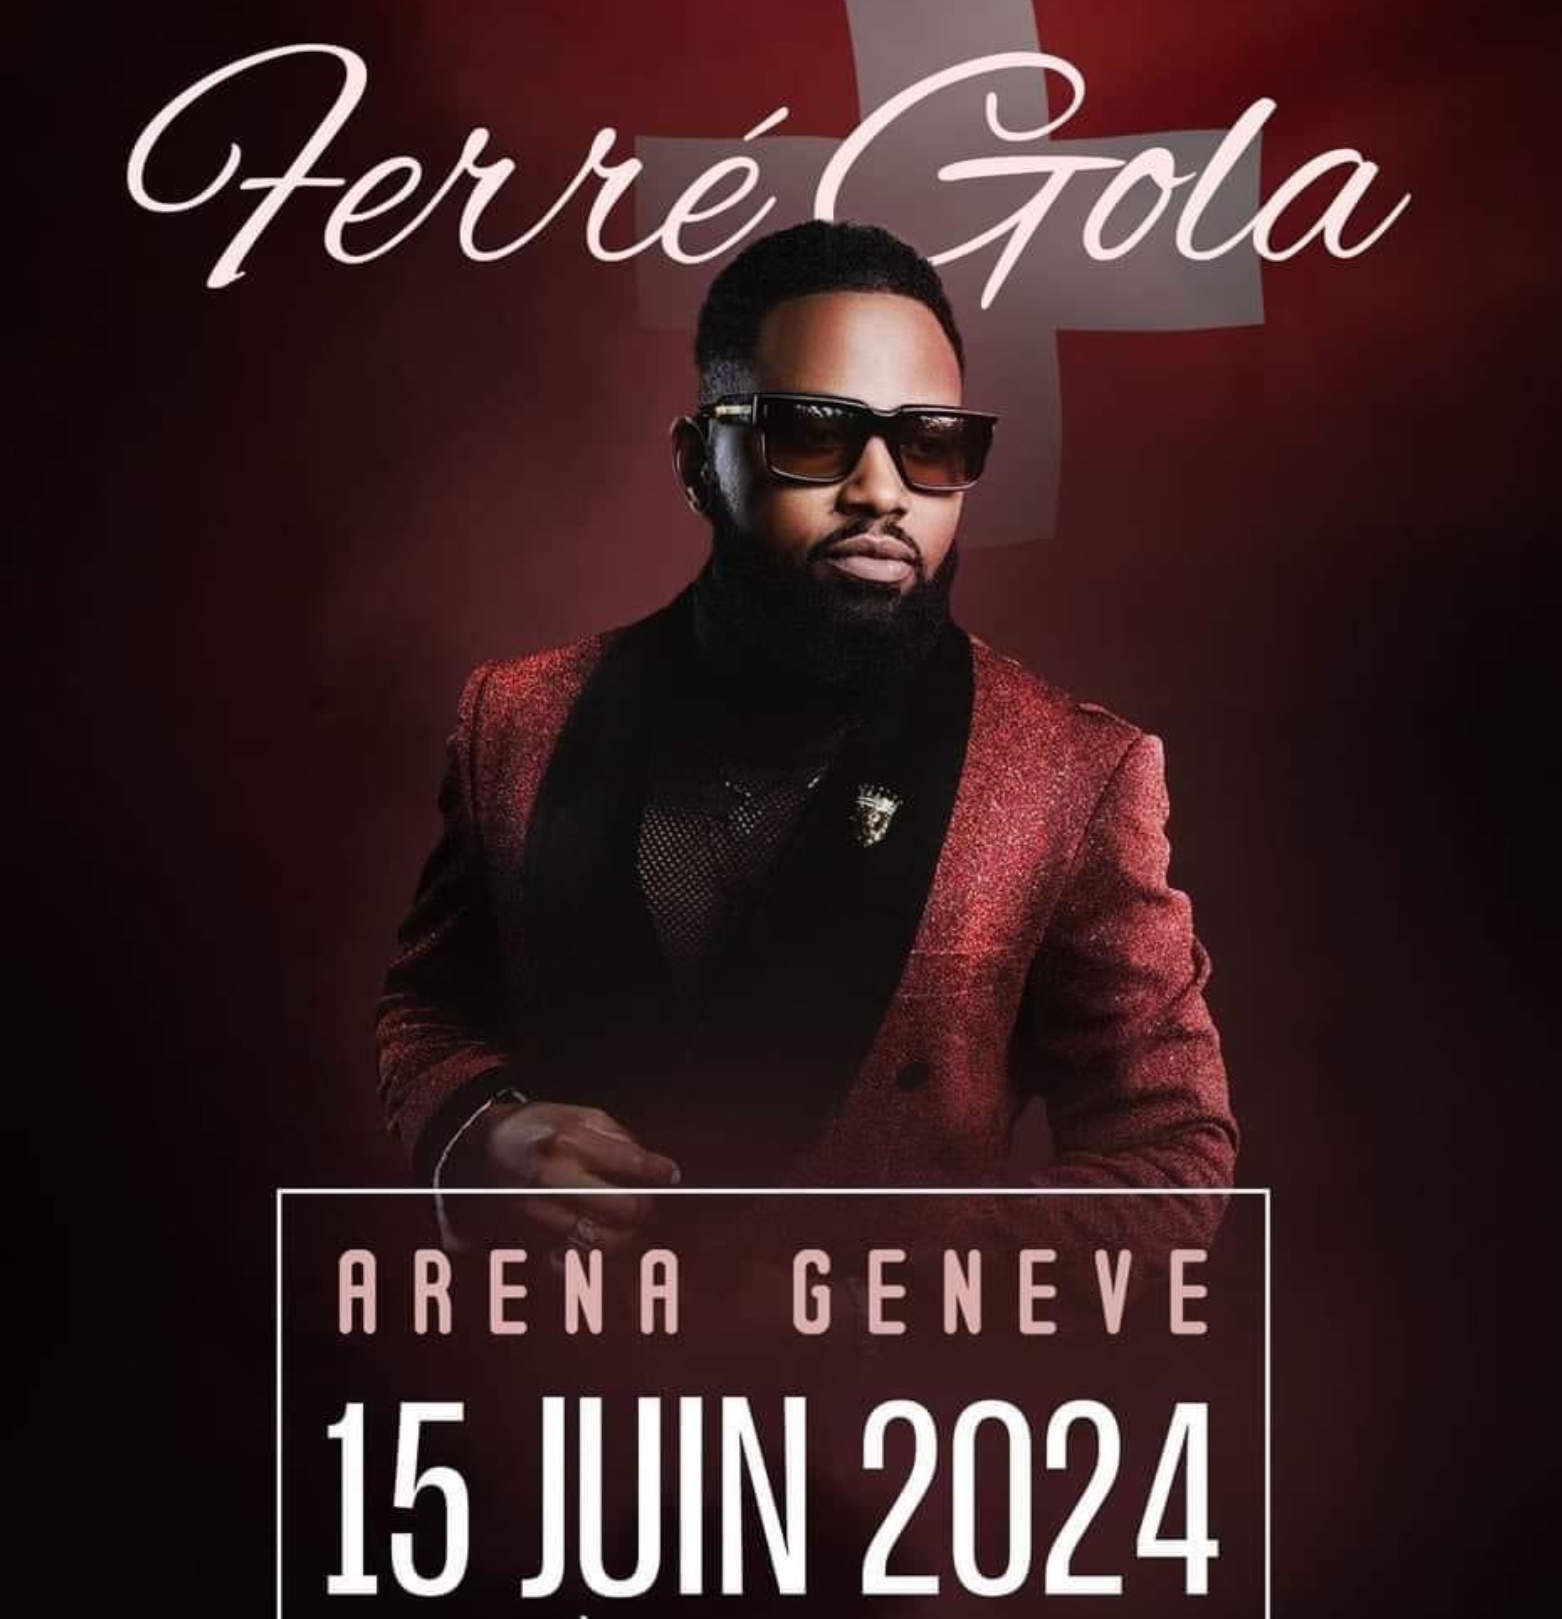 Ferre Gola in der Genf Arena Tickets